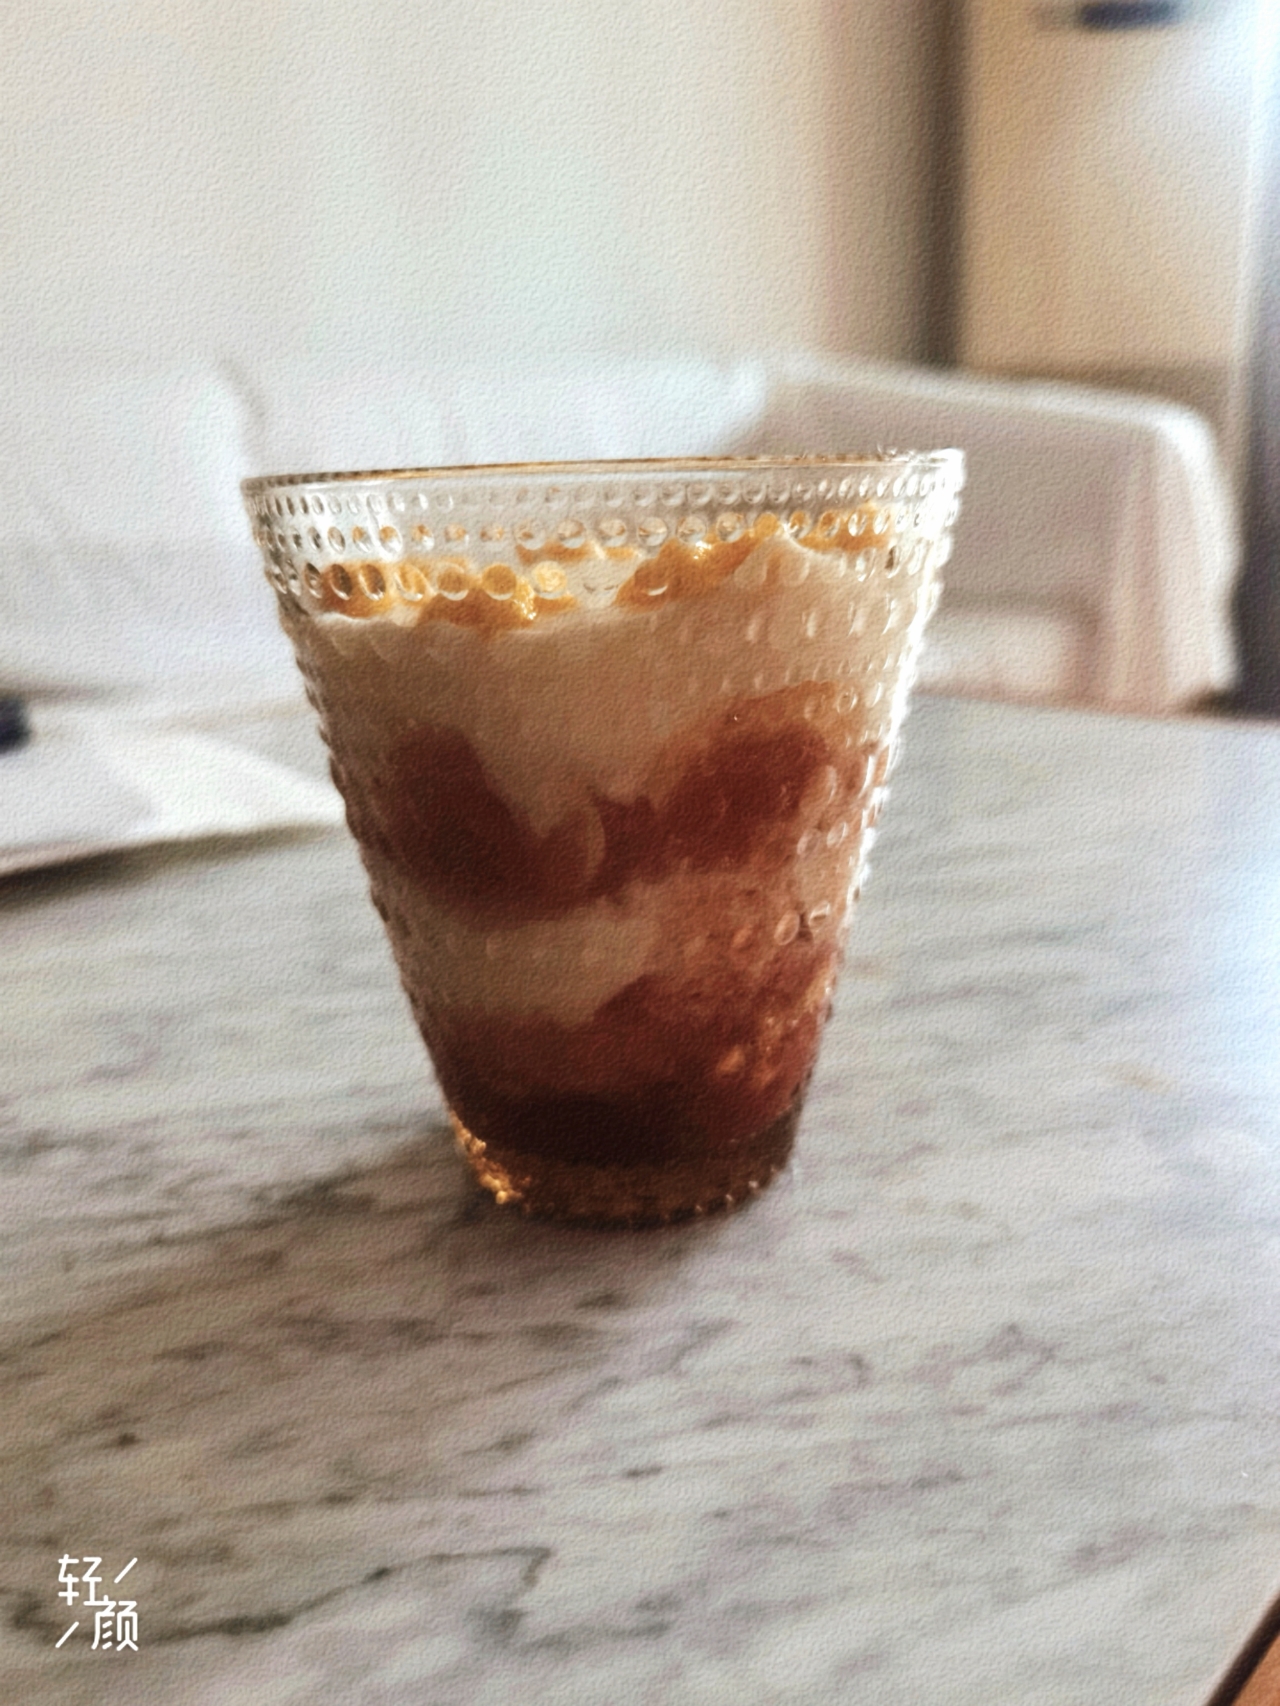 奇奇怪怪的冰淇淋质希腊酸奶杯合集【健康小食】